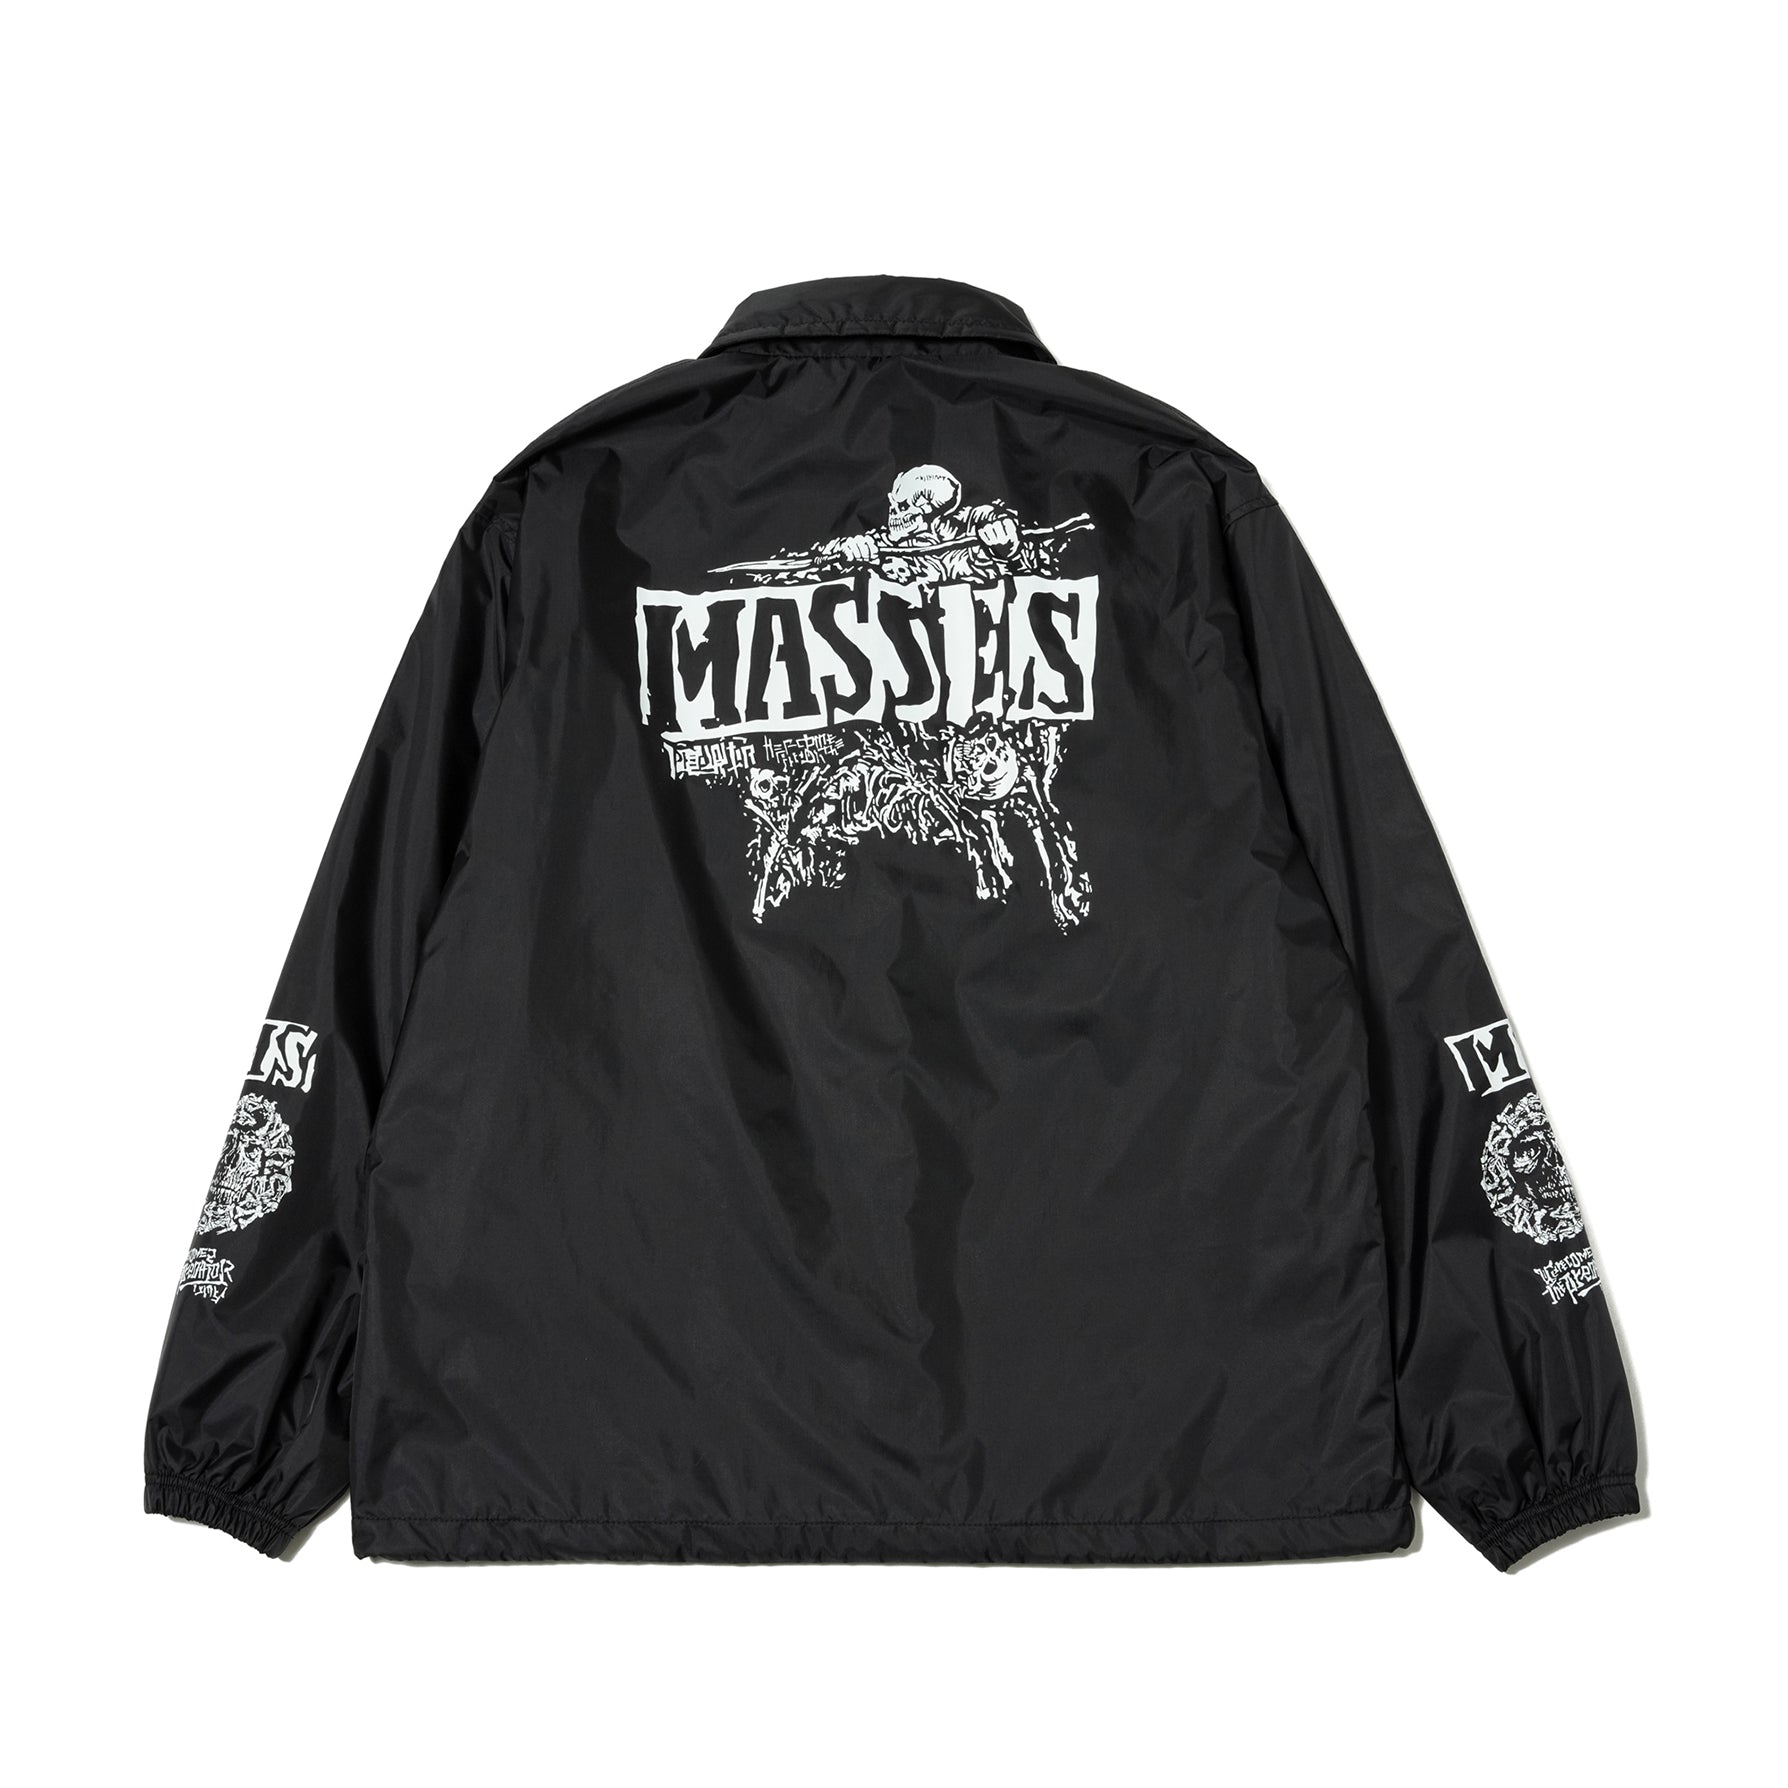 MASSES (マシス) - R&Co. 公式通販